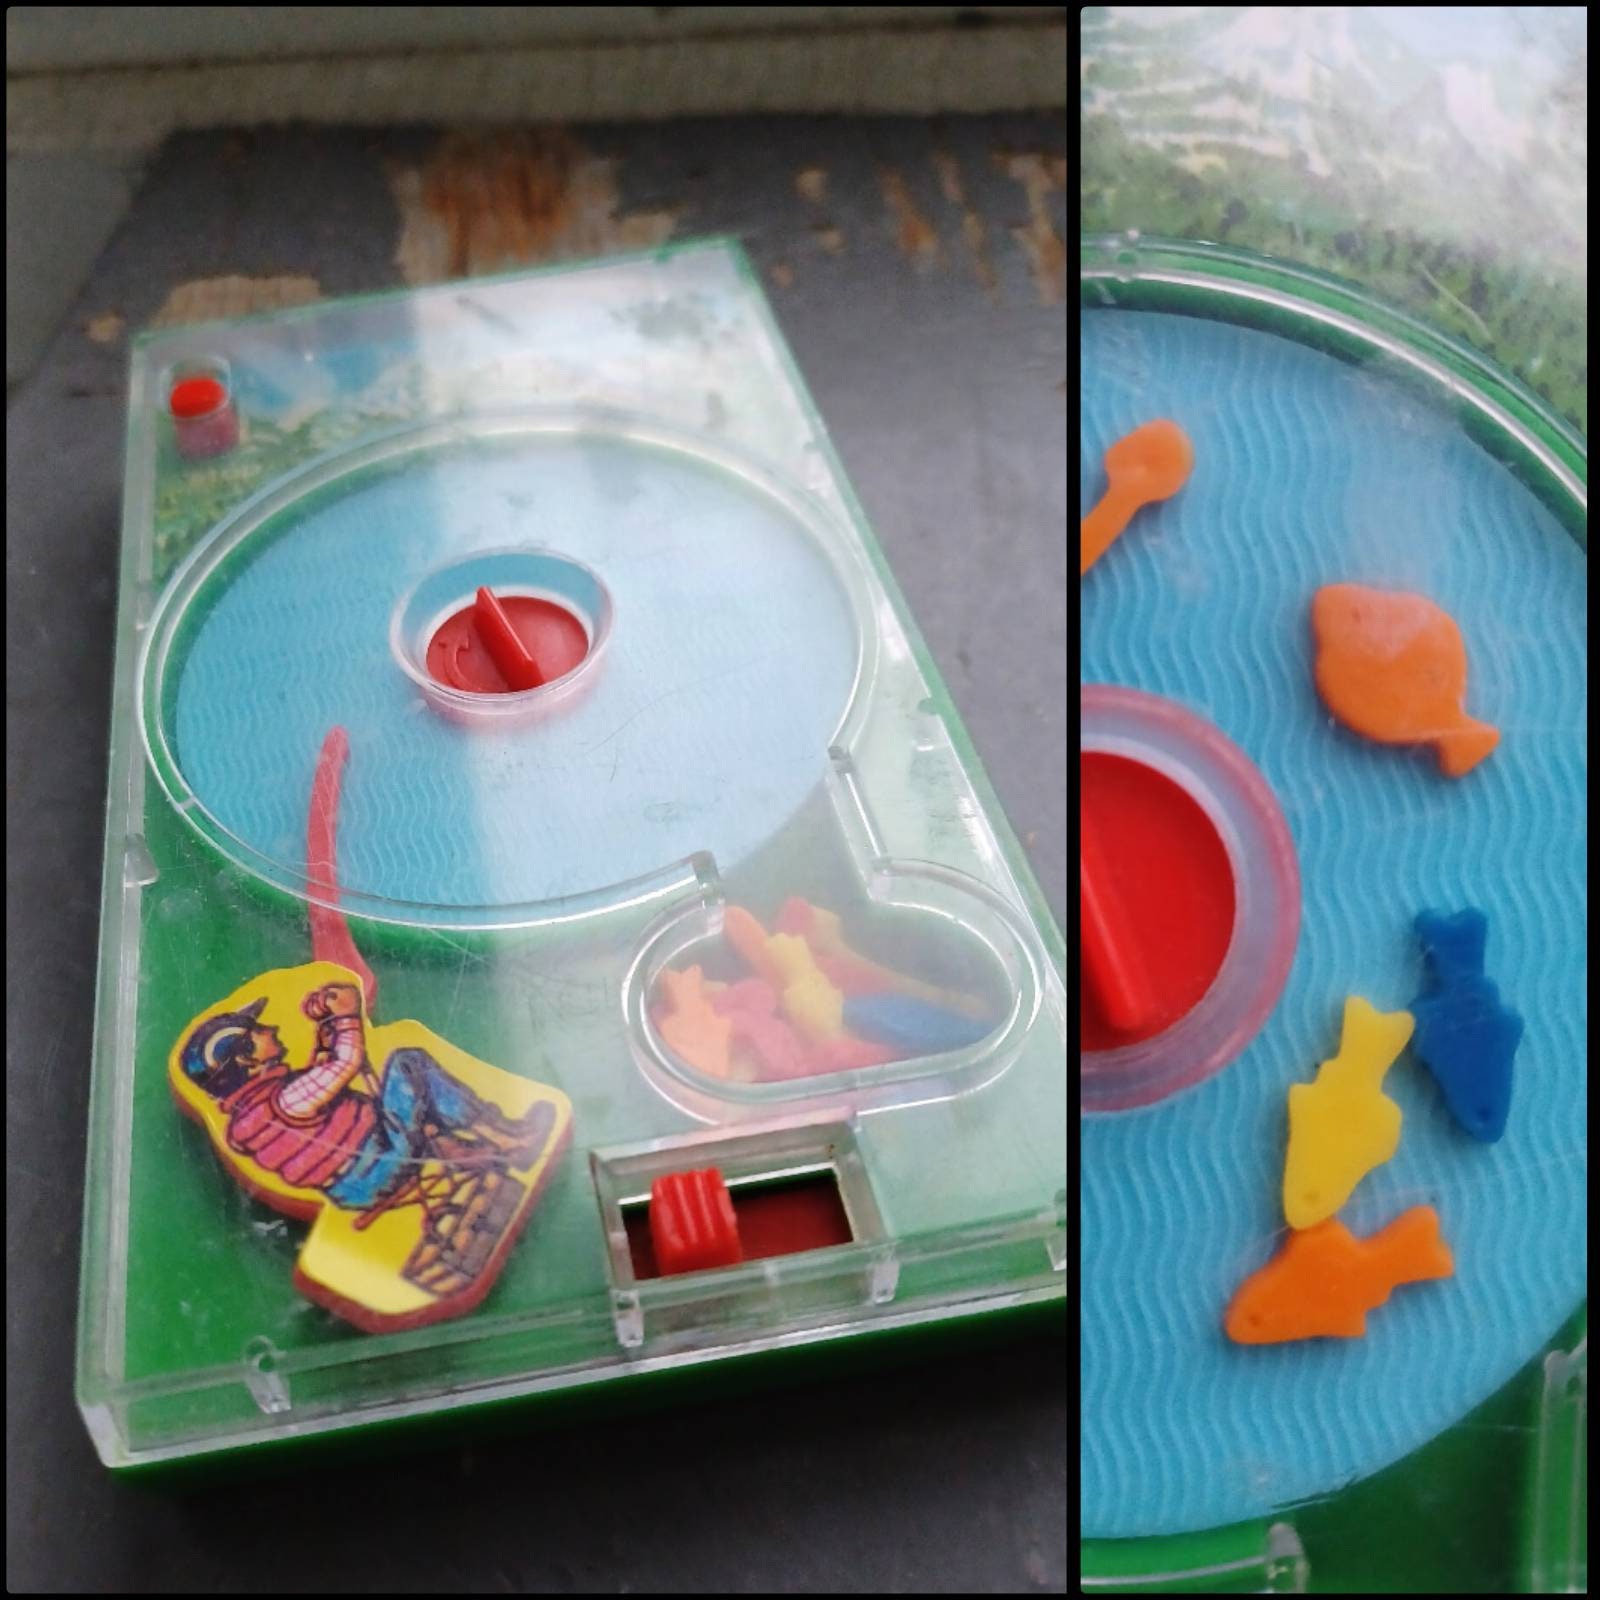 Tricky Bille - Jeu Tomy 1989 - jouets rétro jeux de société figurines et  objets vintage